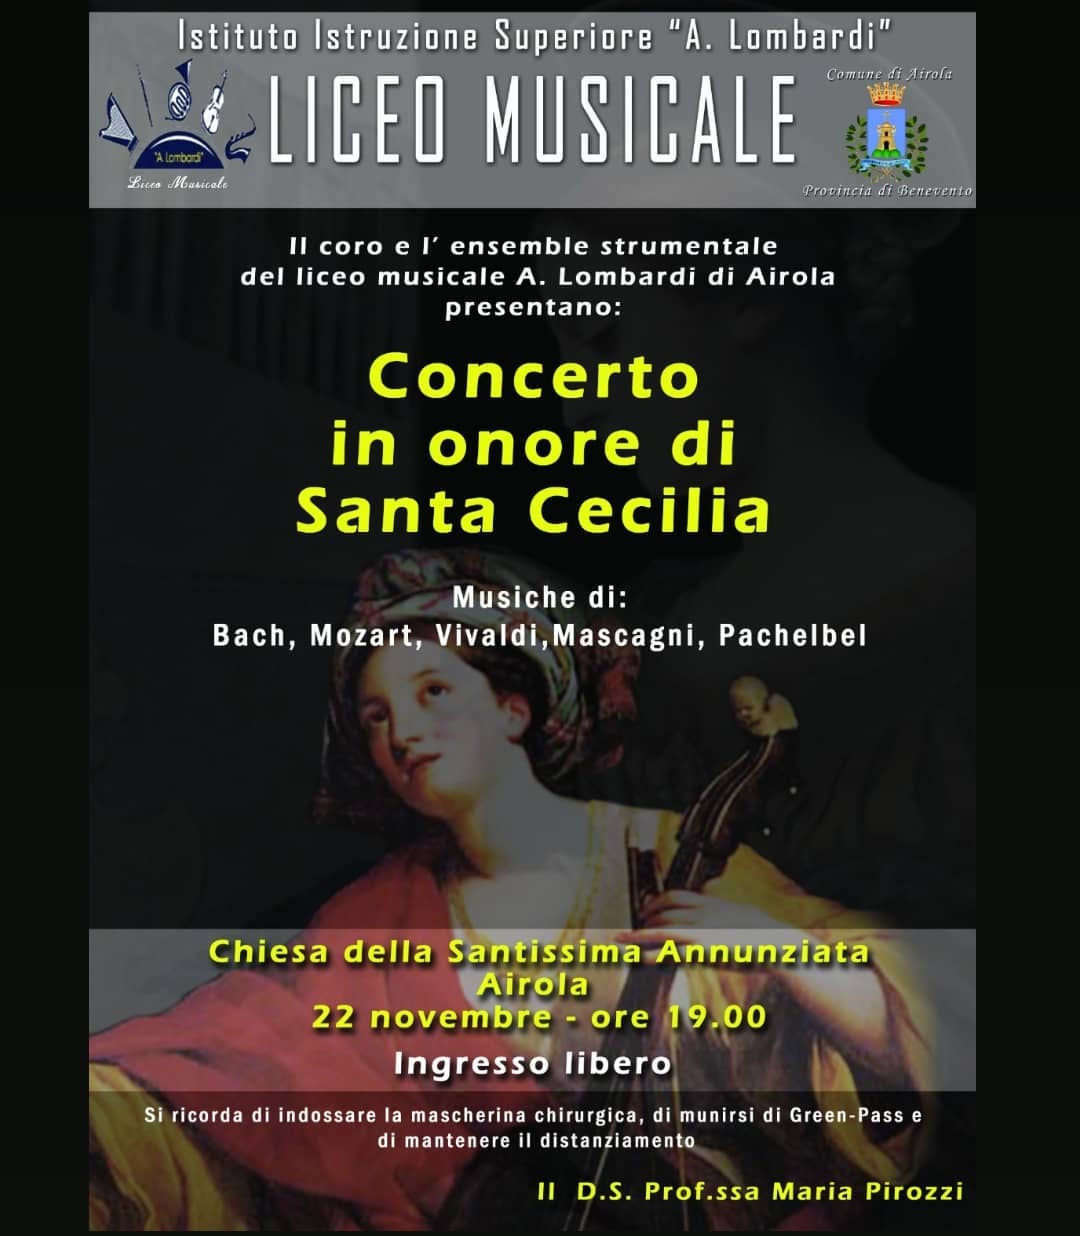 Airola| IIS “Lombardi” celebra Santa Cecilia